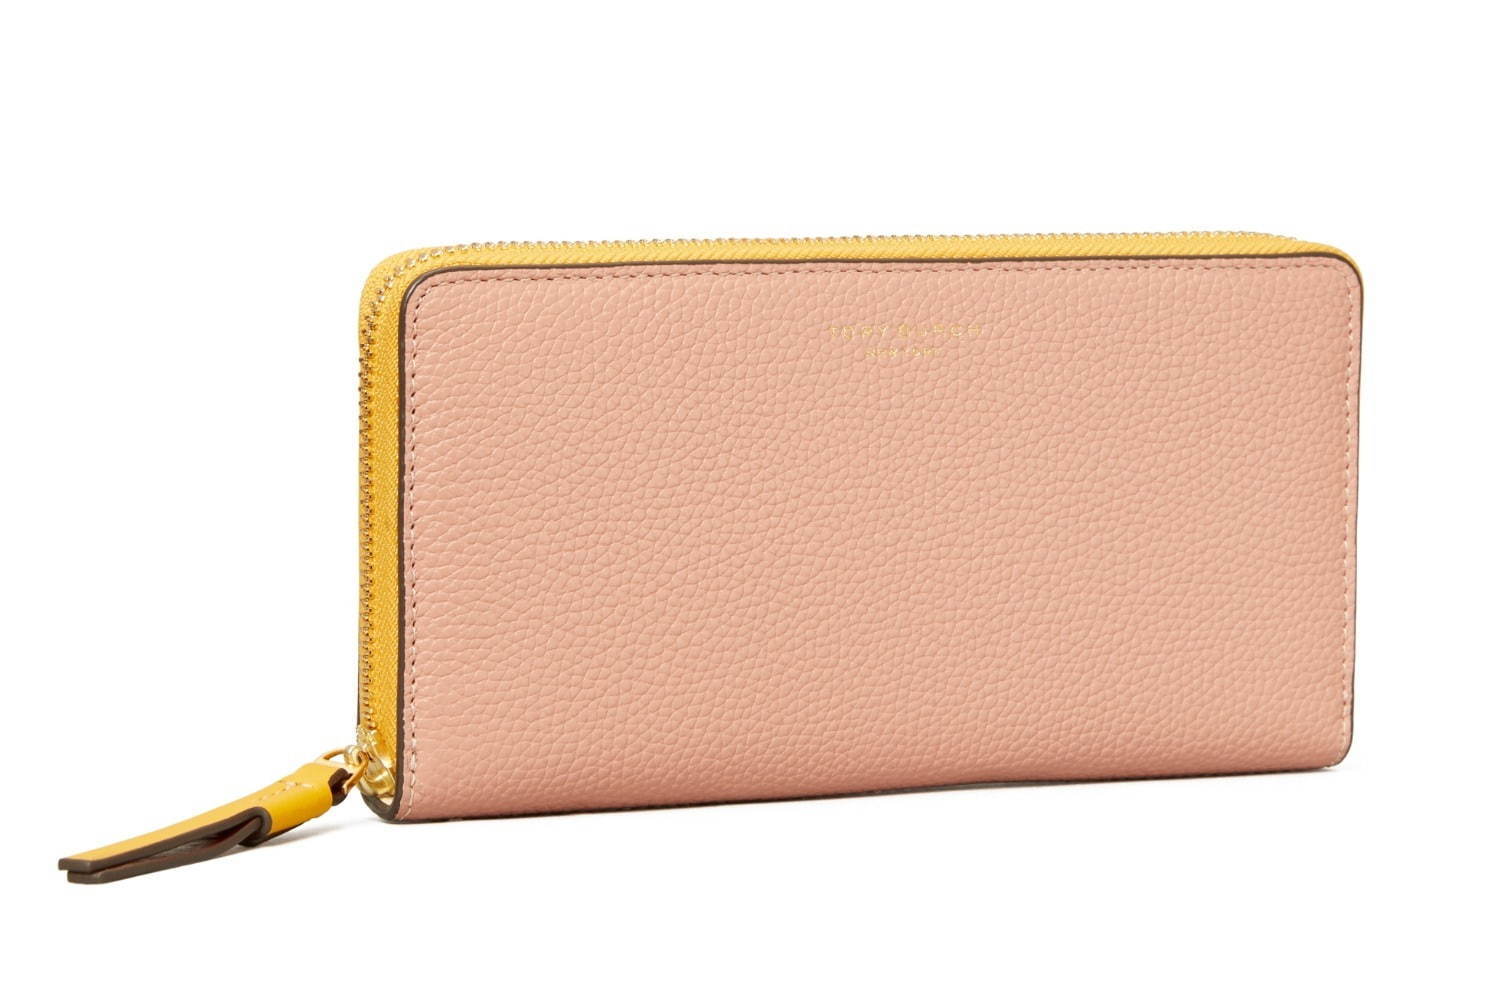 人気ブランドのレディース長財布 おしゃれで使いやすい 20代 30代女性向けおすすめウォレット ファッションプレス